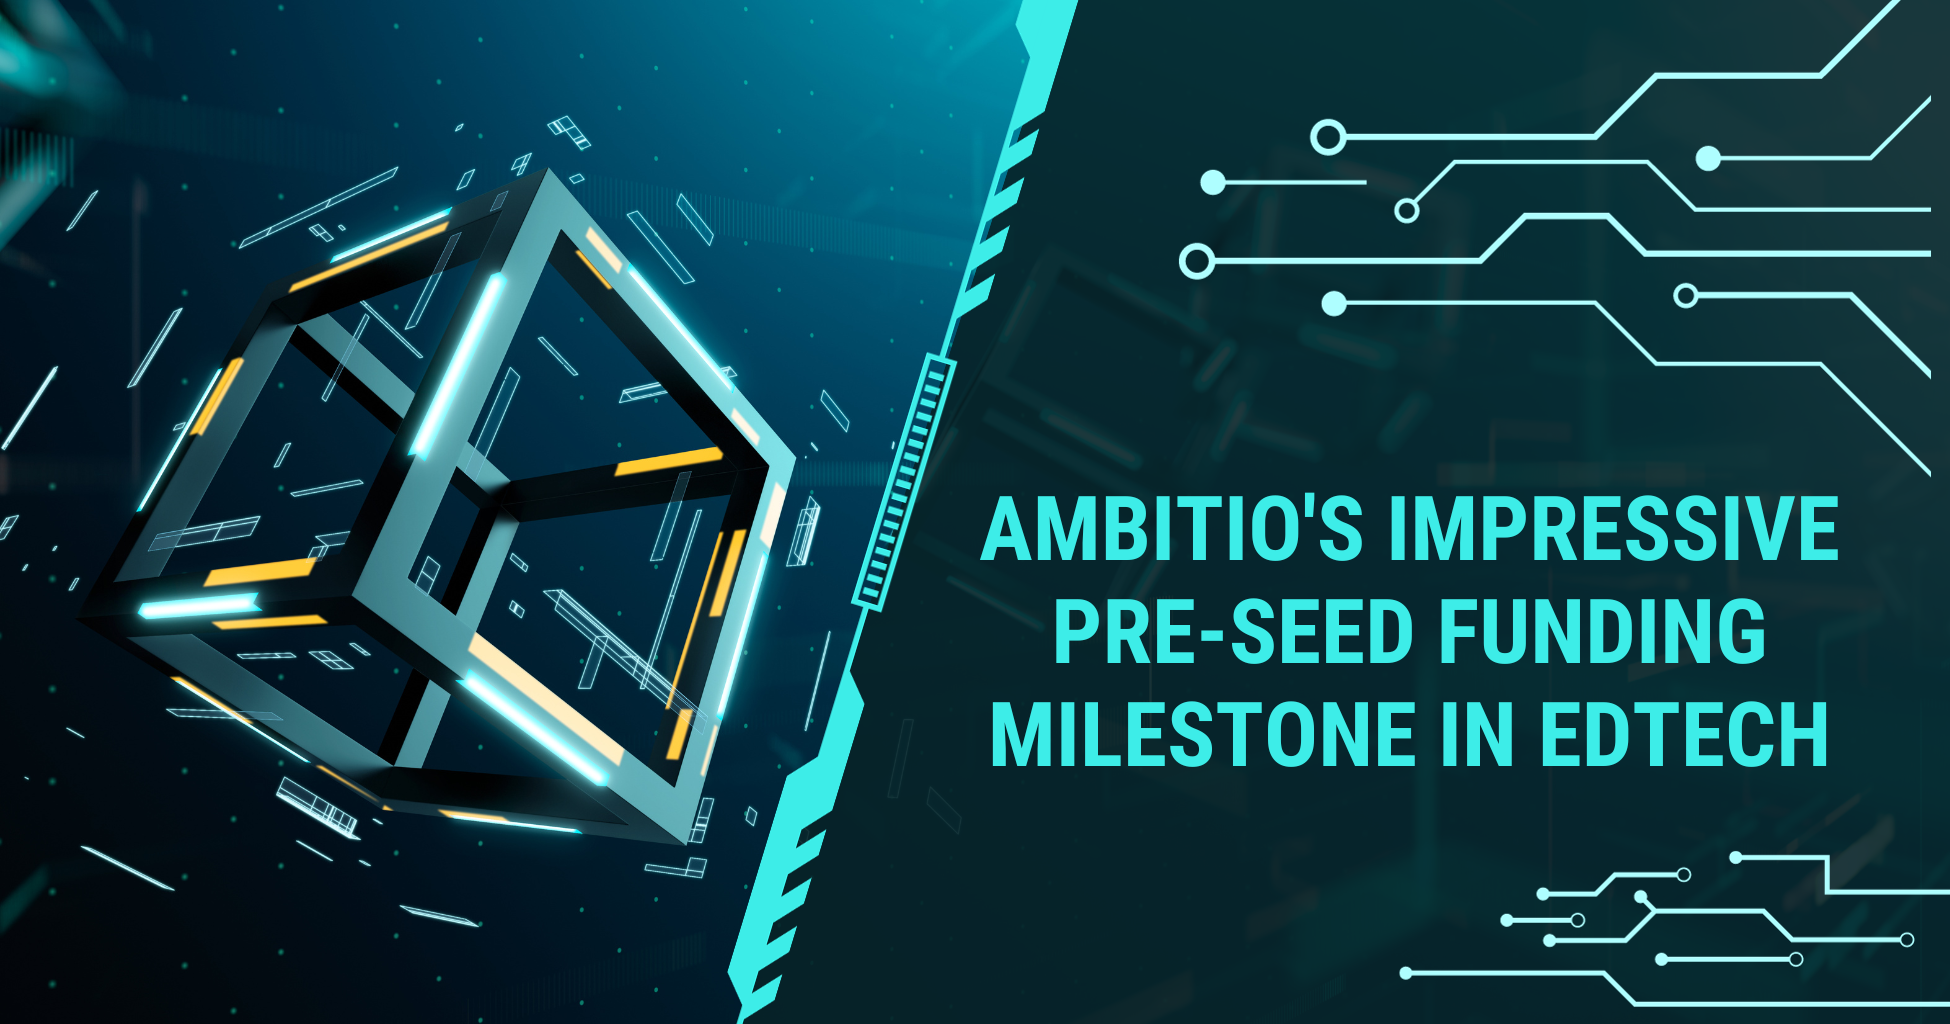 Ambitio's Impressive Pre-Seed Funding Milestone in EdTech